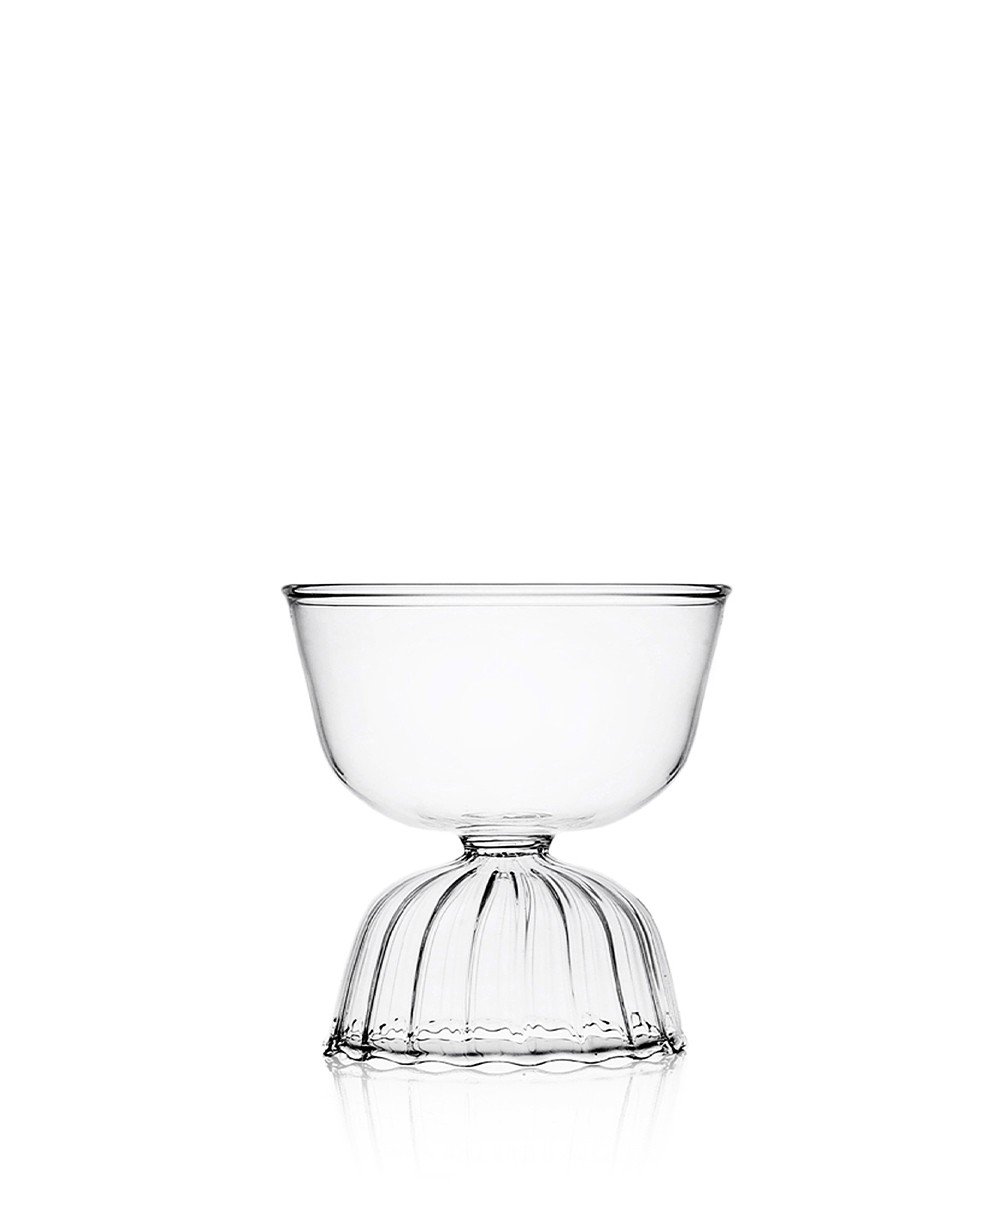 Produktbild "Tutu Wasserbowl" des Herstellers Ichendorf Milano im RAUM Conceptstore